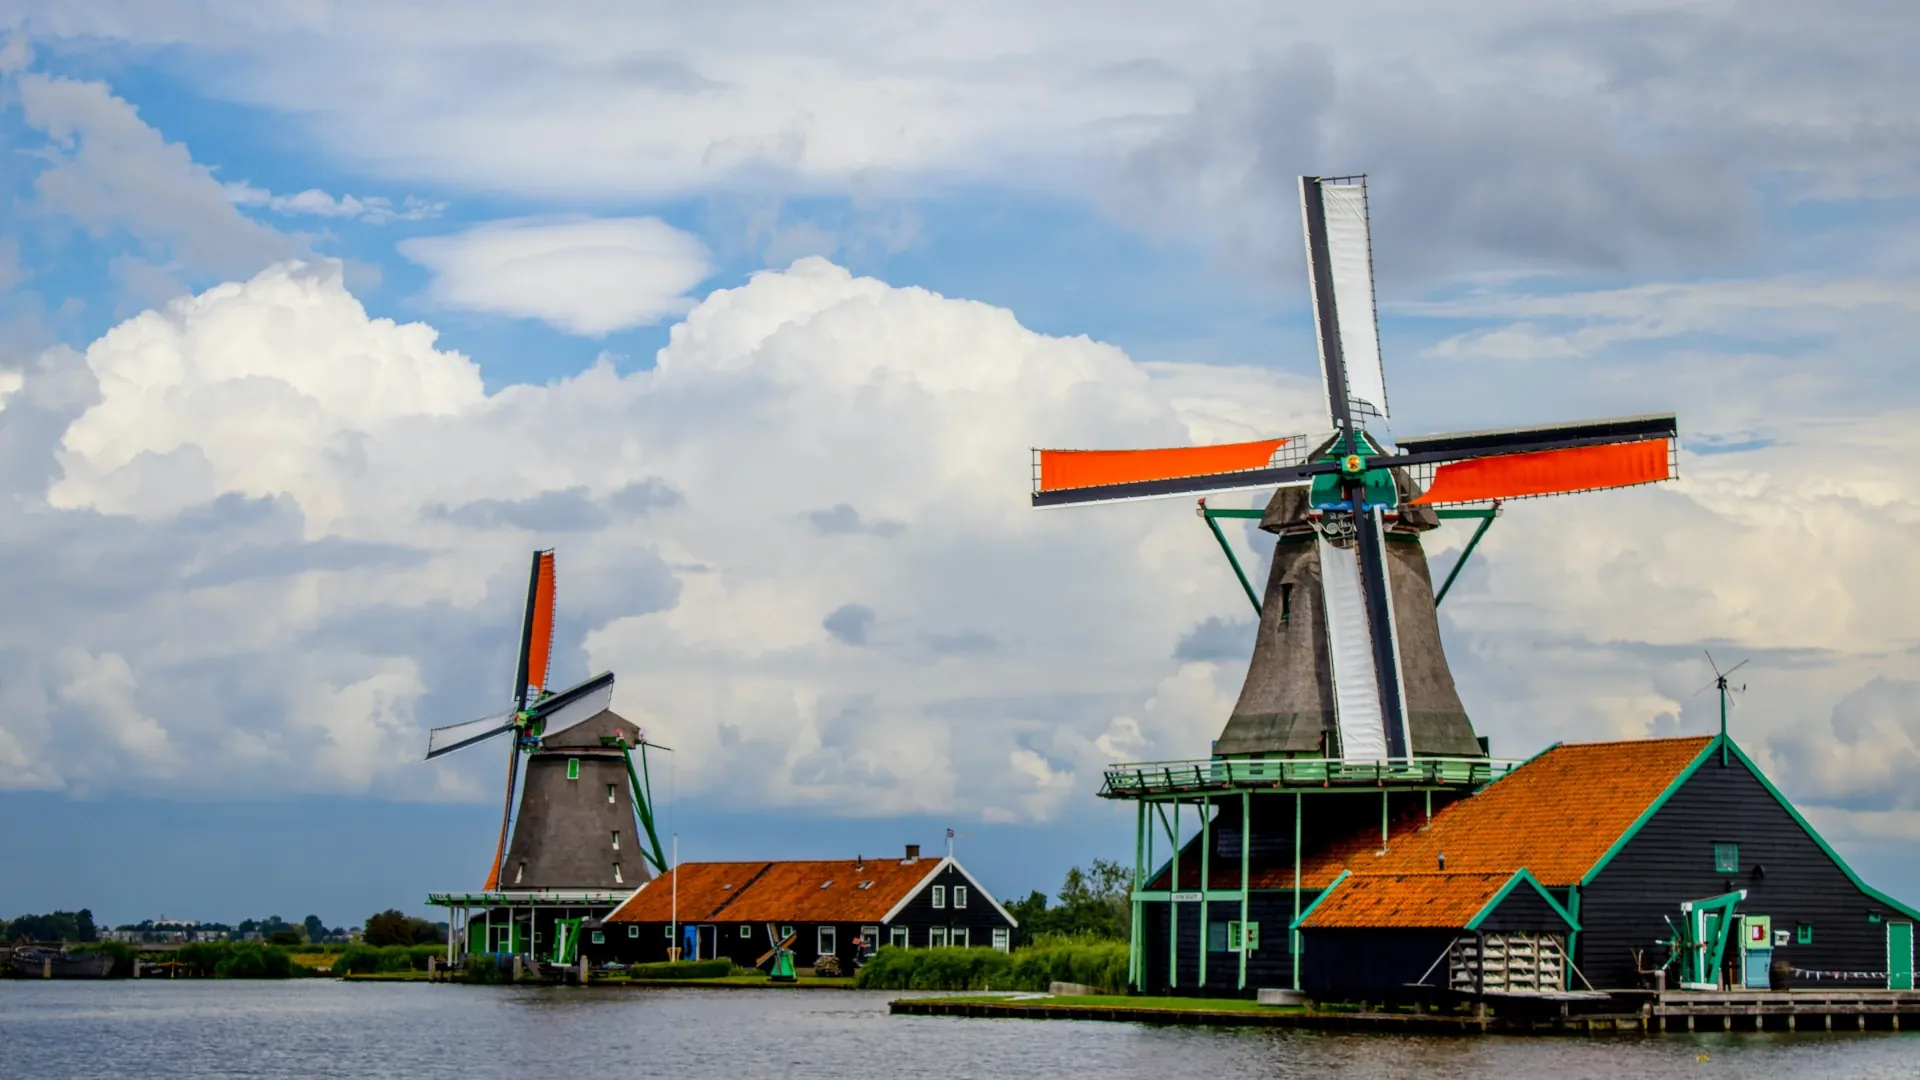 Dos molinos en la orilla de un canal en la ciudad de Zaanse Schans